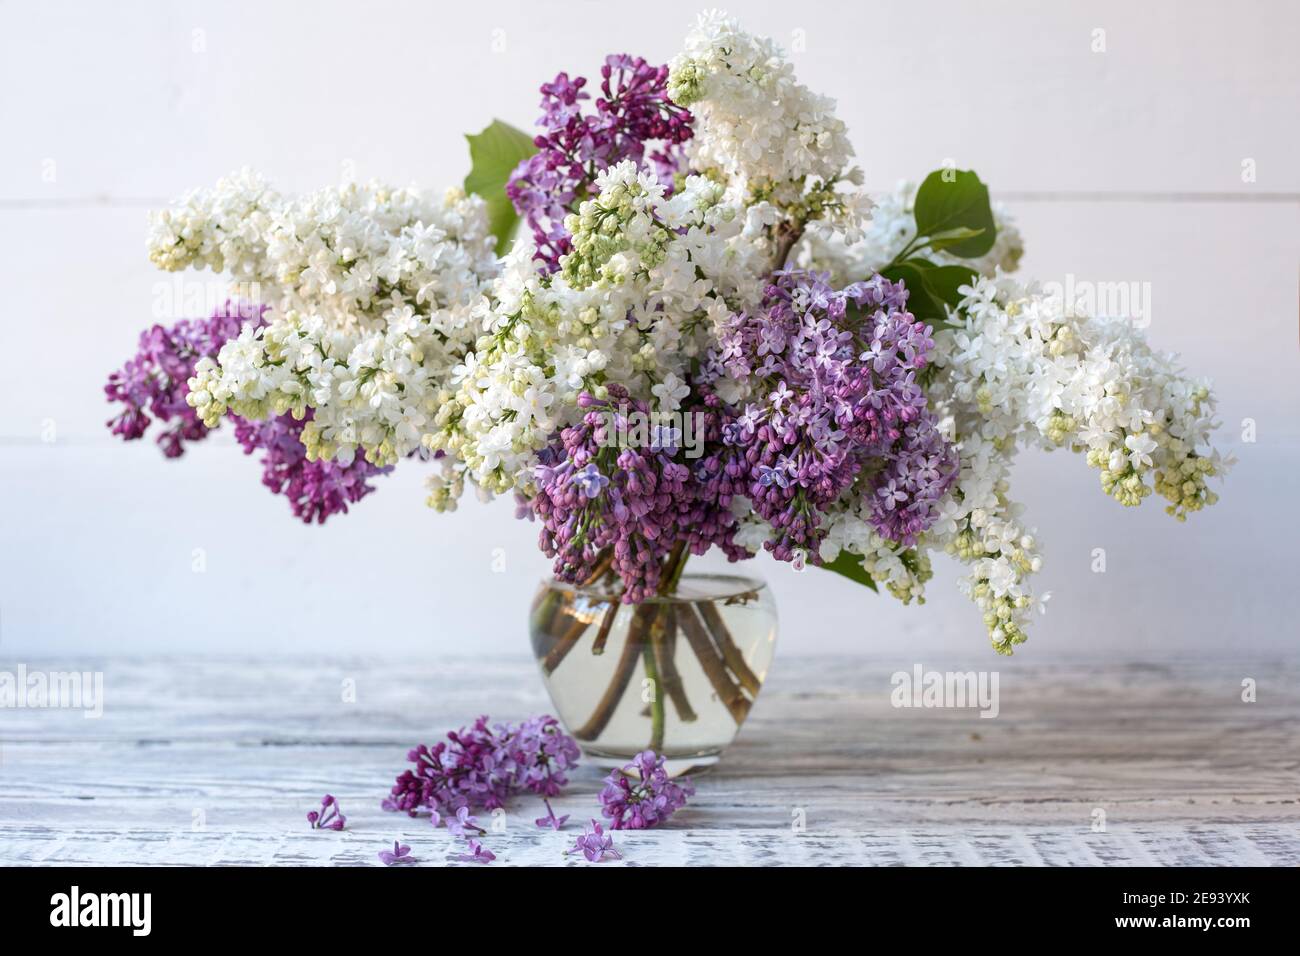 Lilas blanc et lilas violet dans un vase en verre sur une table en bois.  Branches printanières de lilas fleurs bouquet festif de fleurs Photo Stock  - Alamy